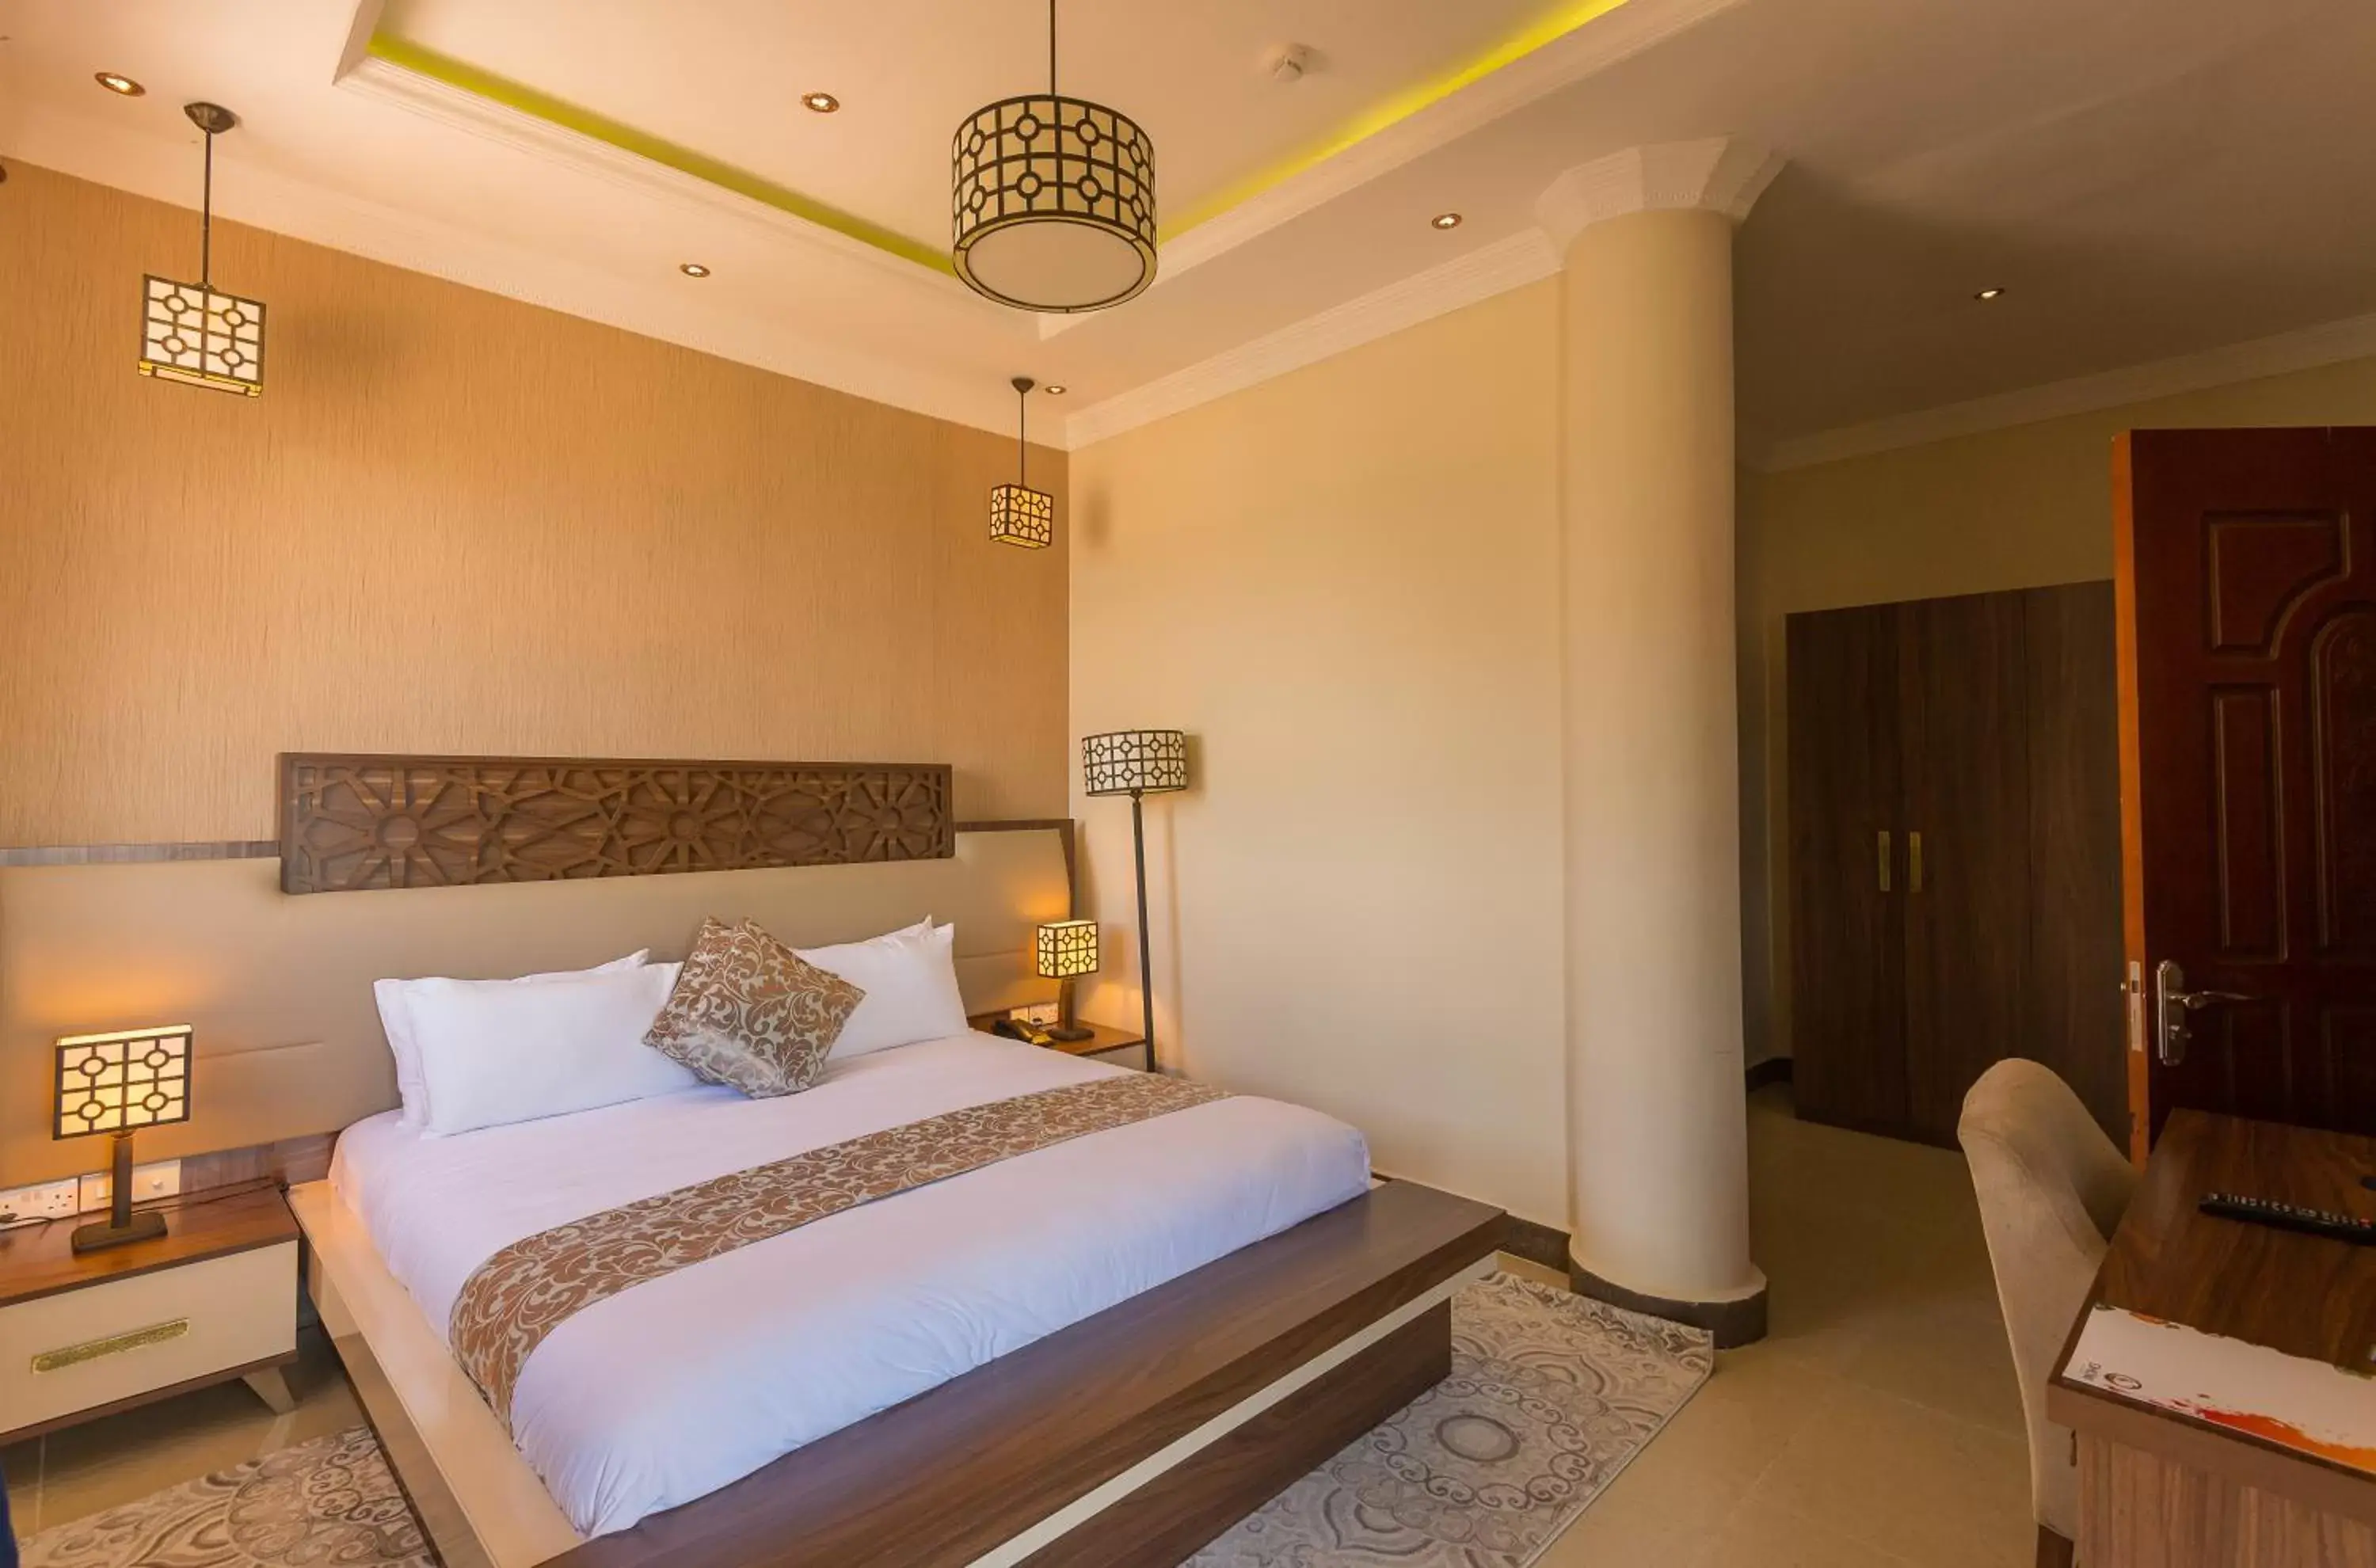 cot, Room Photo in Golden Tulip Zanzibar Resort